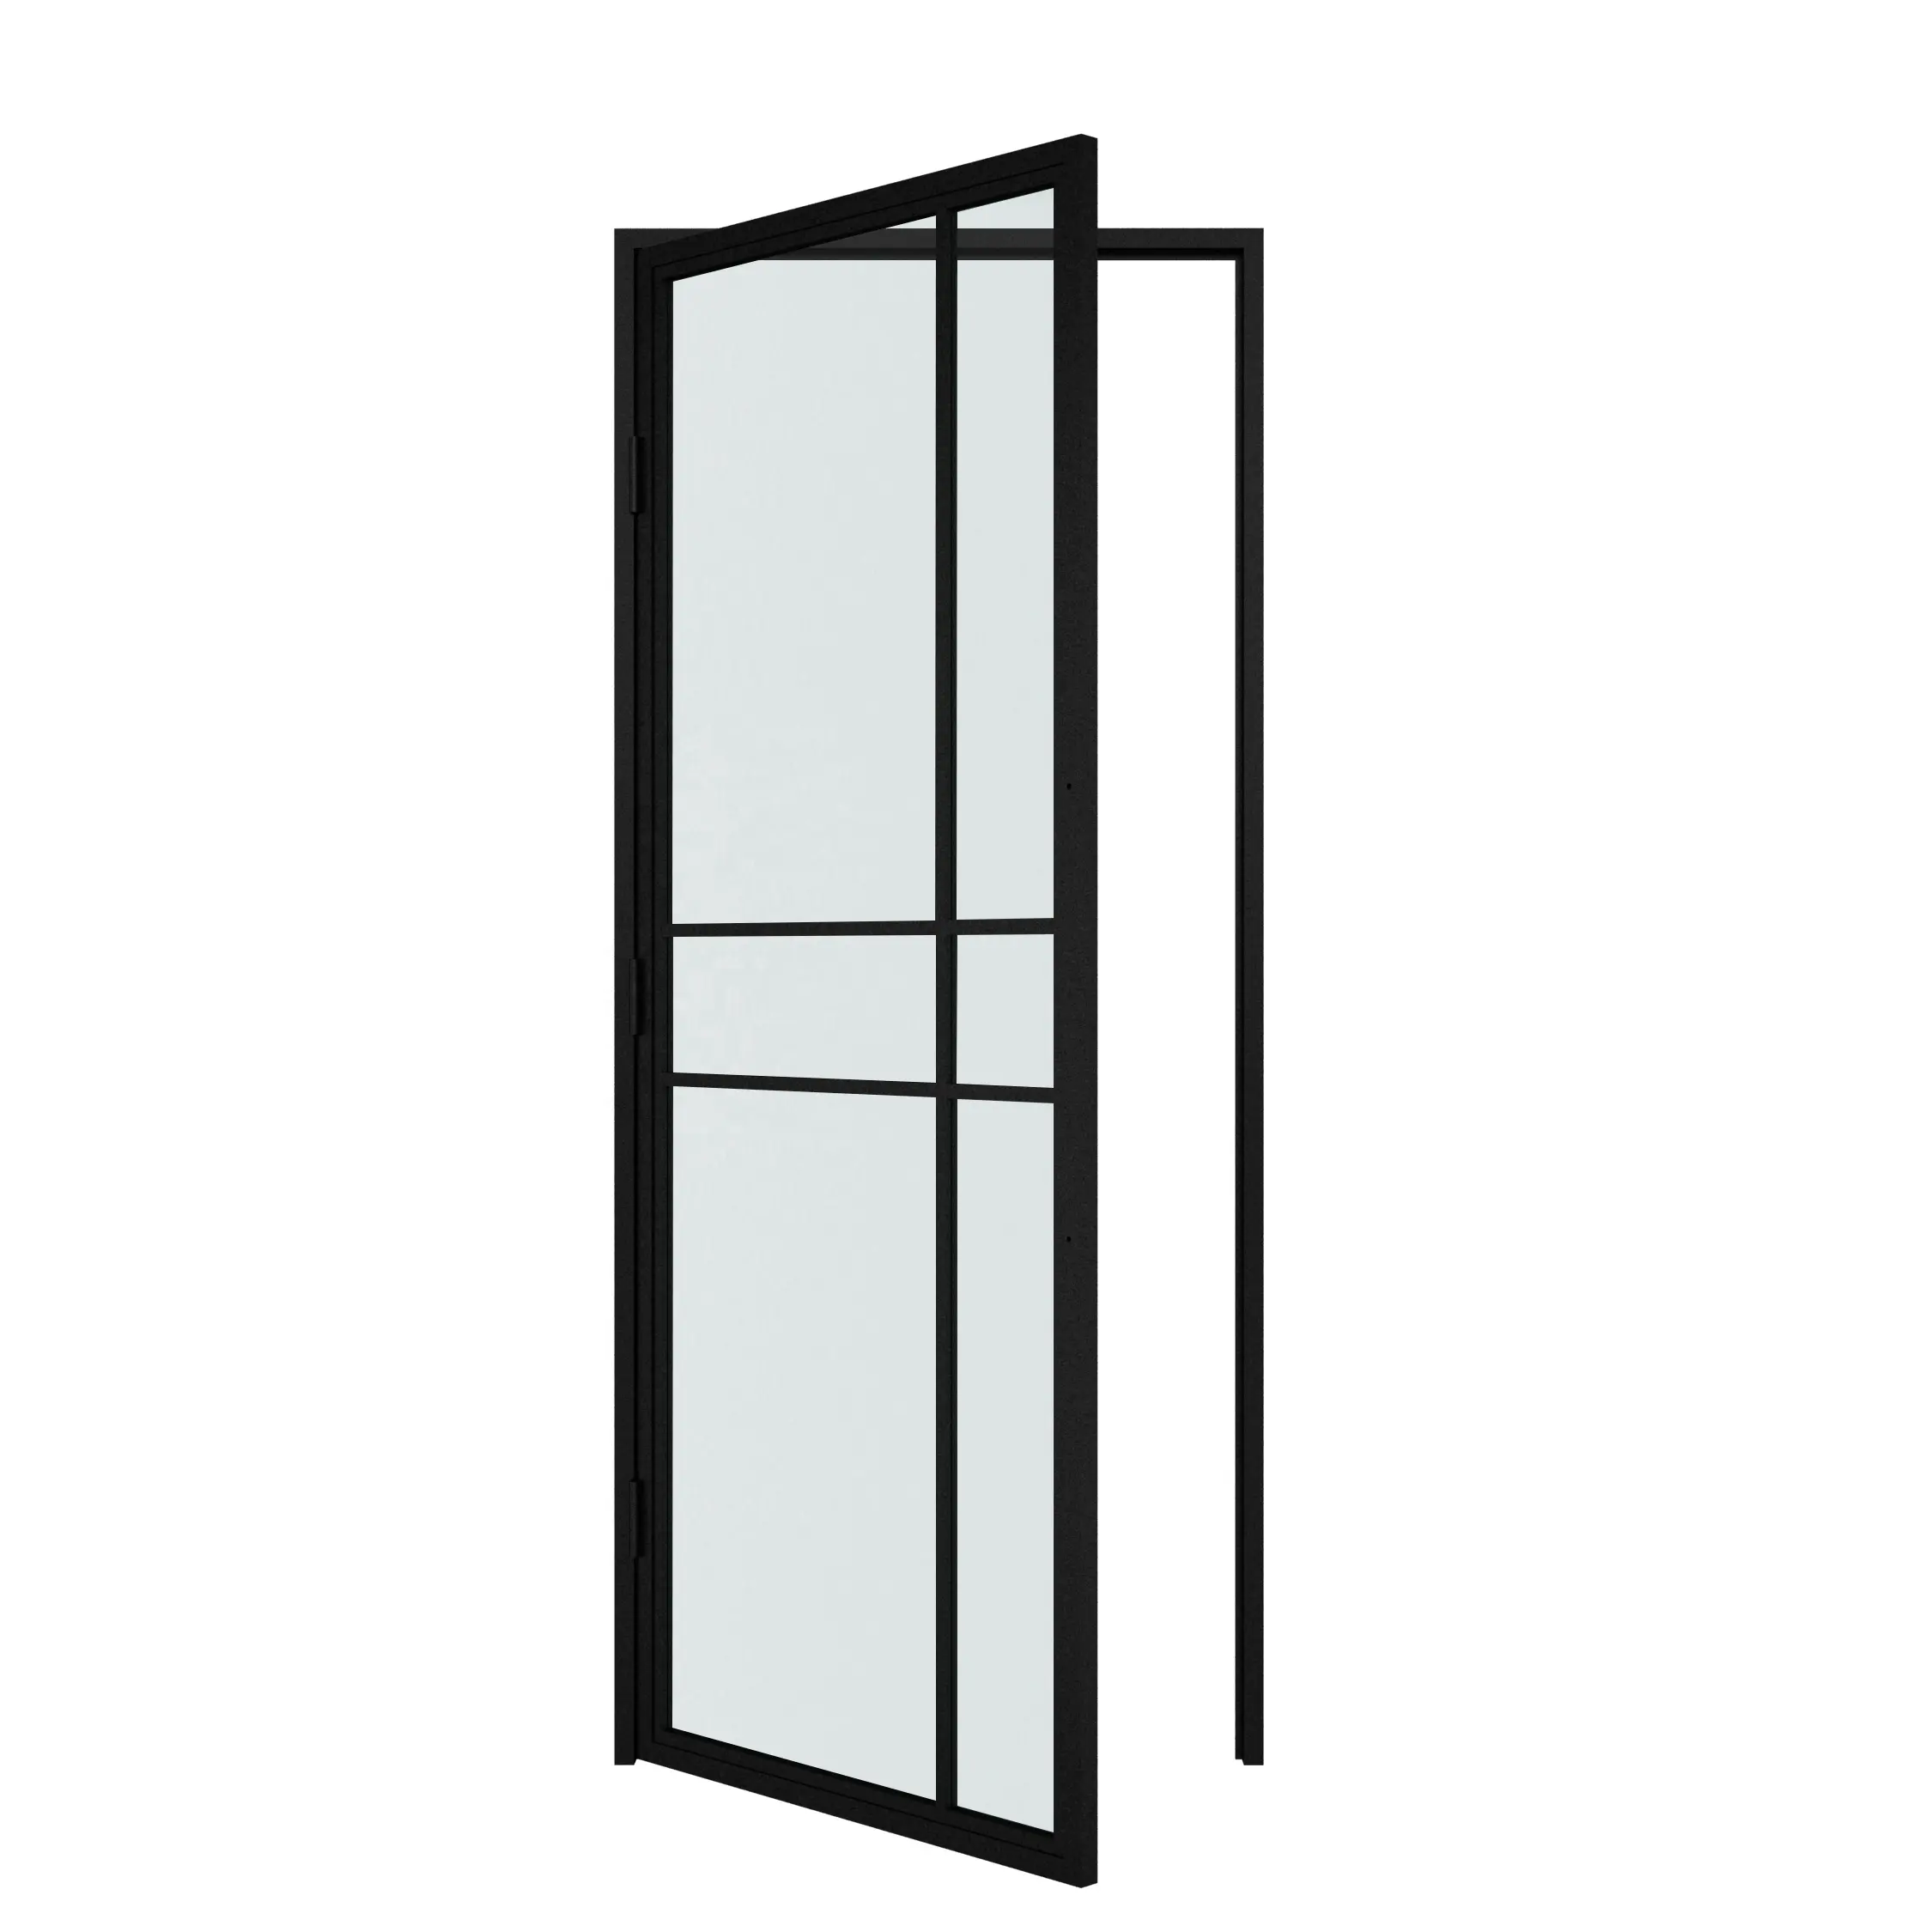 Metal Frame Door Steel Frame Glass Swing Door With Steel Frame And Hinges Metal Framed Glass Door Frosted Customized Design